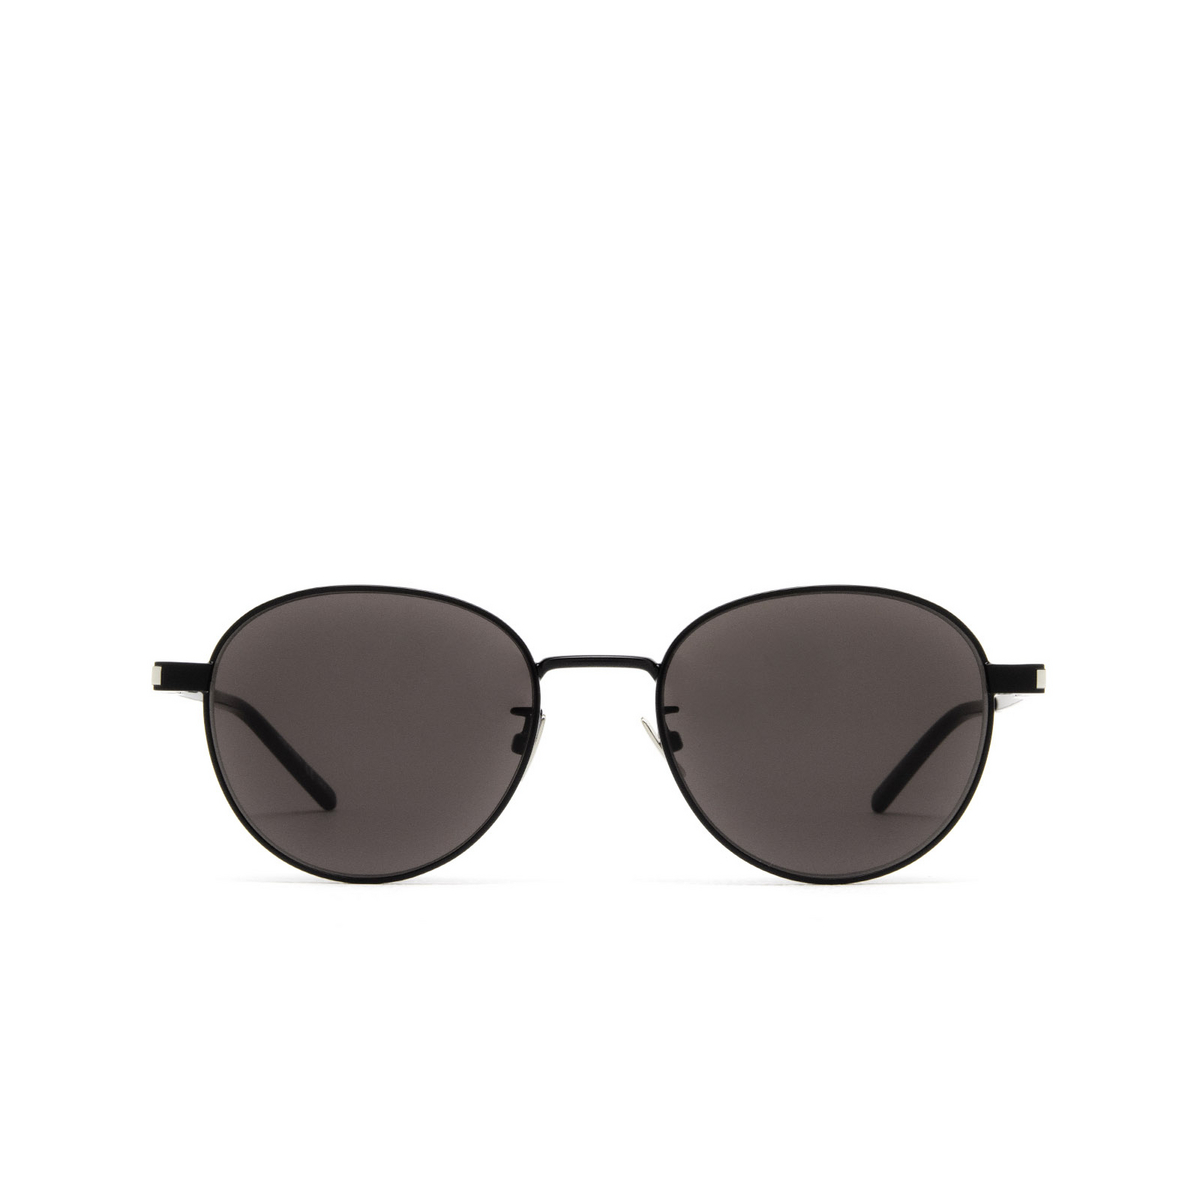 Saint Laurent® Round Sunglasses: SL 533 color Black 009 - front view.